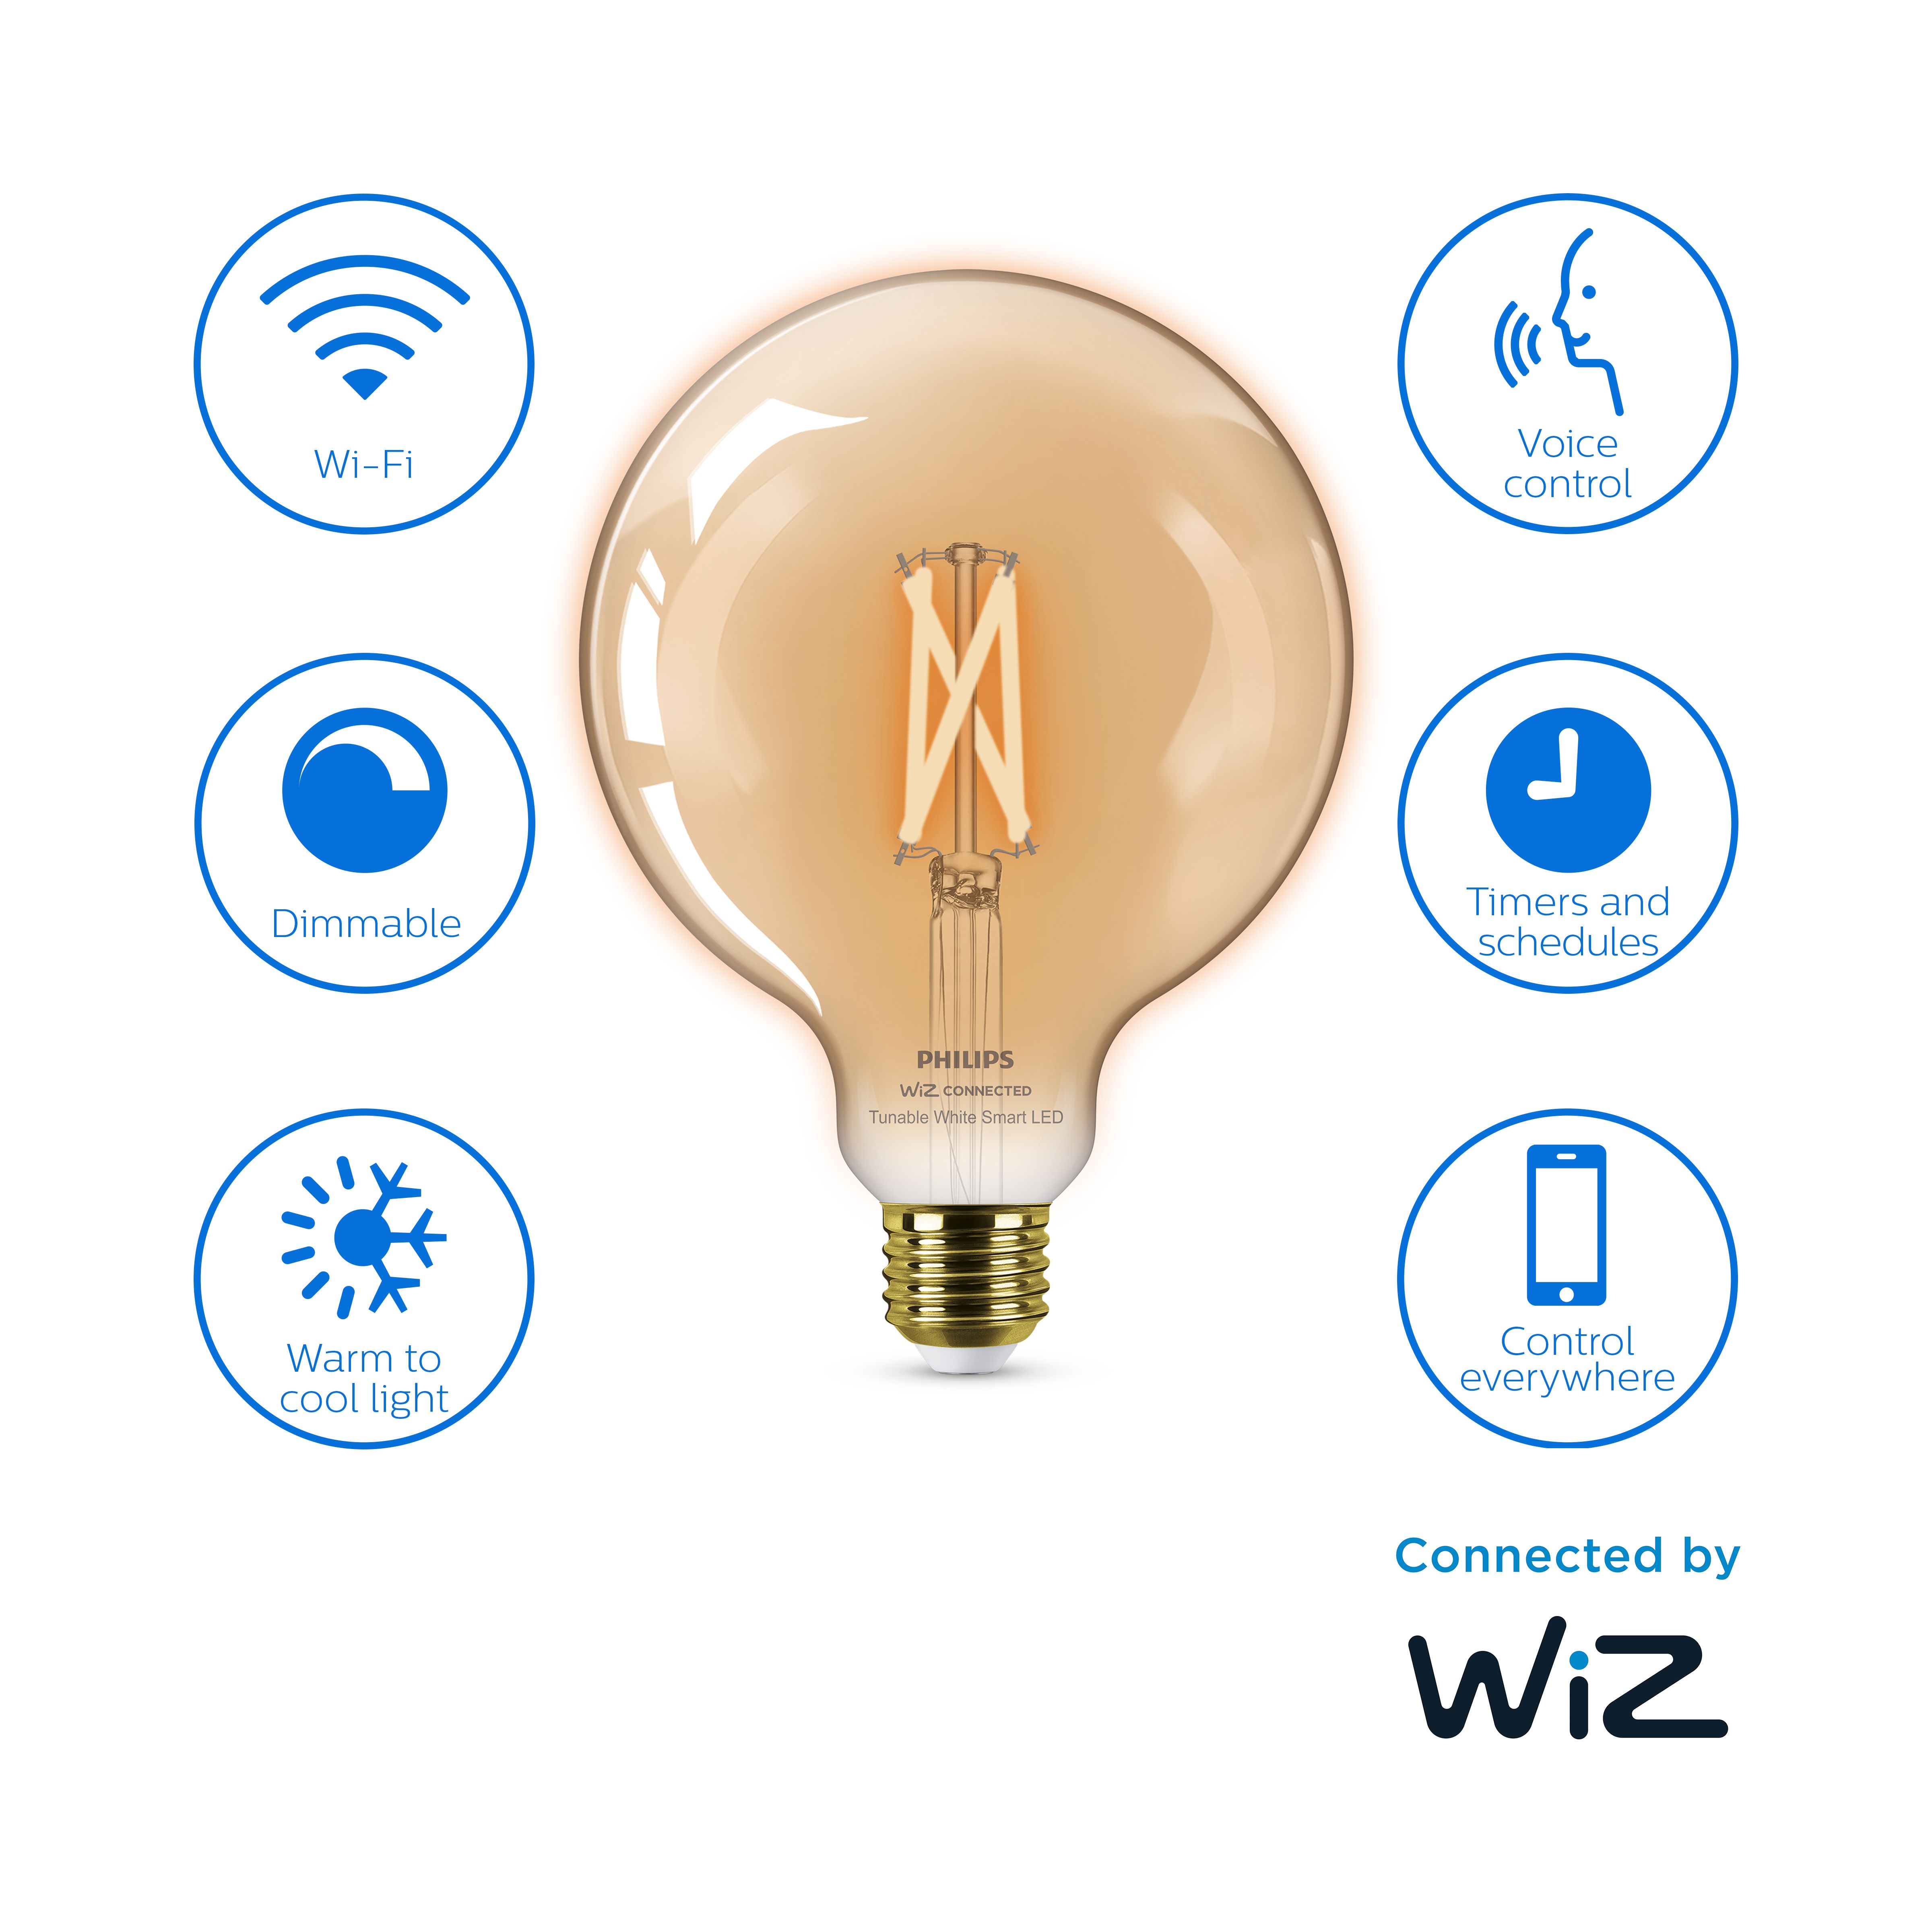 Philips WiZ G125 E27 50W LED Cool white & warm white Filament Smart Light bulb